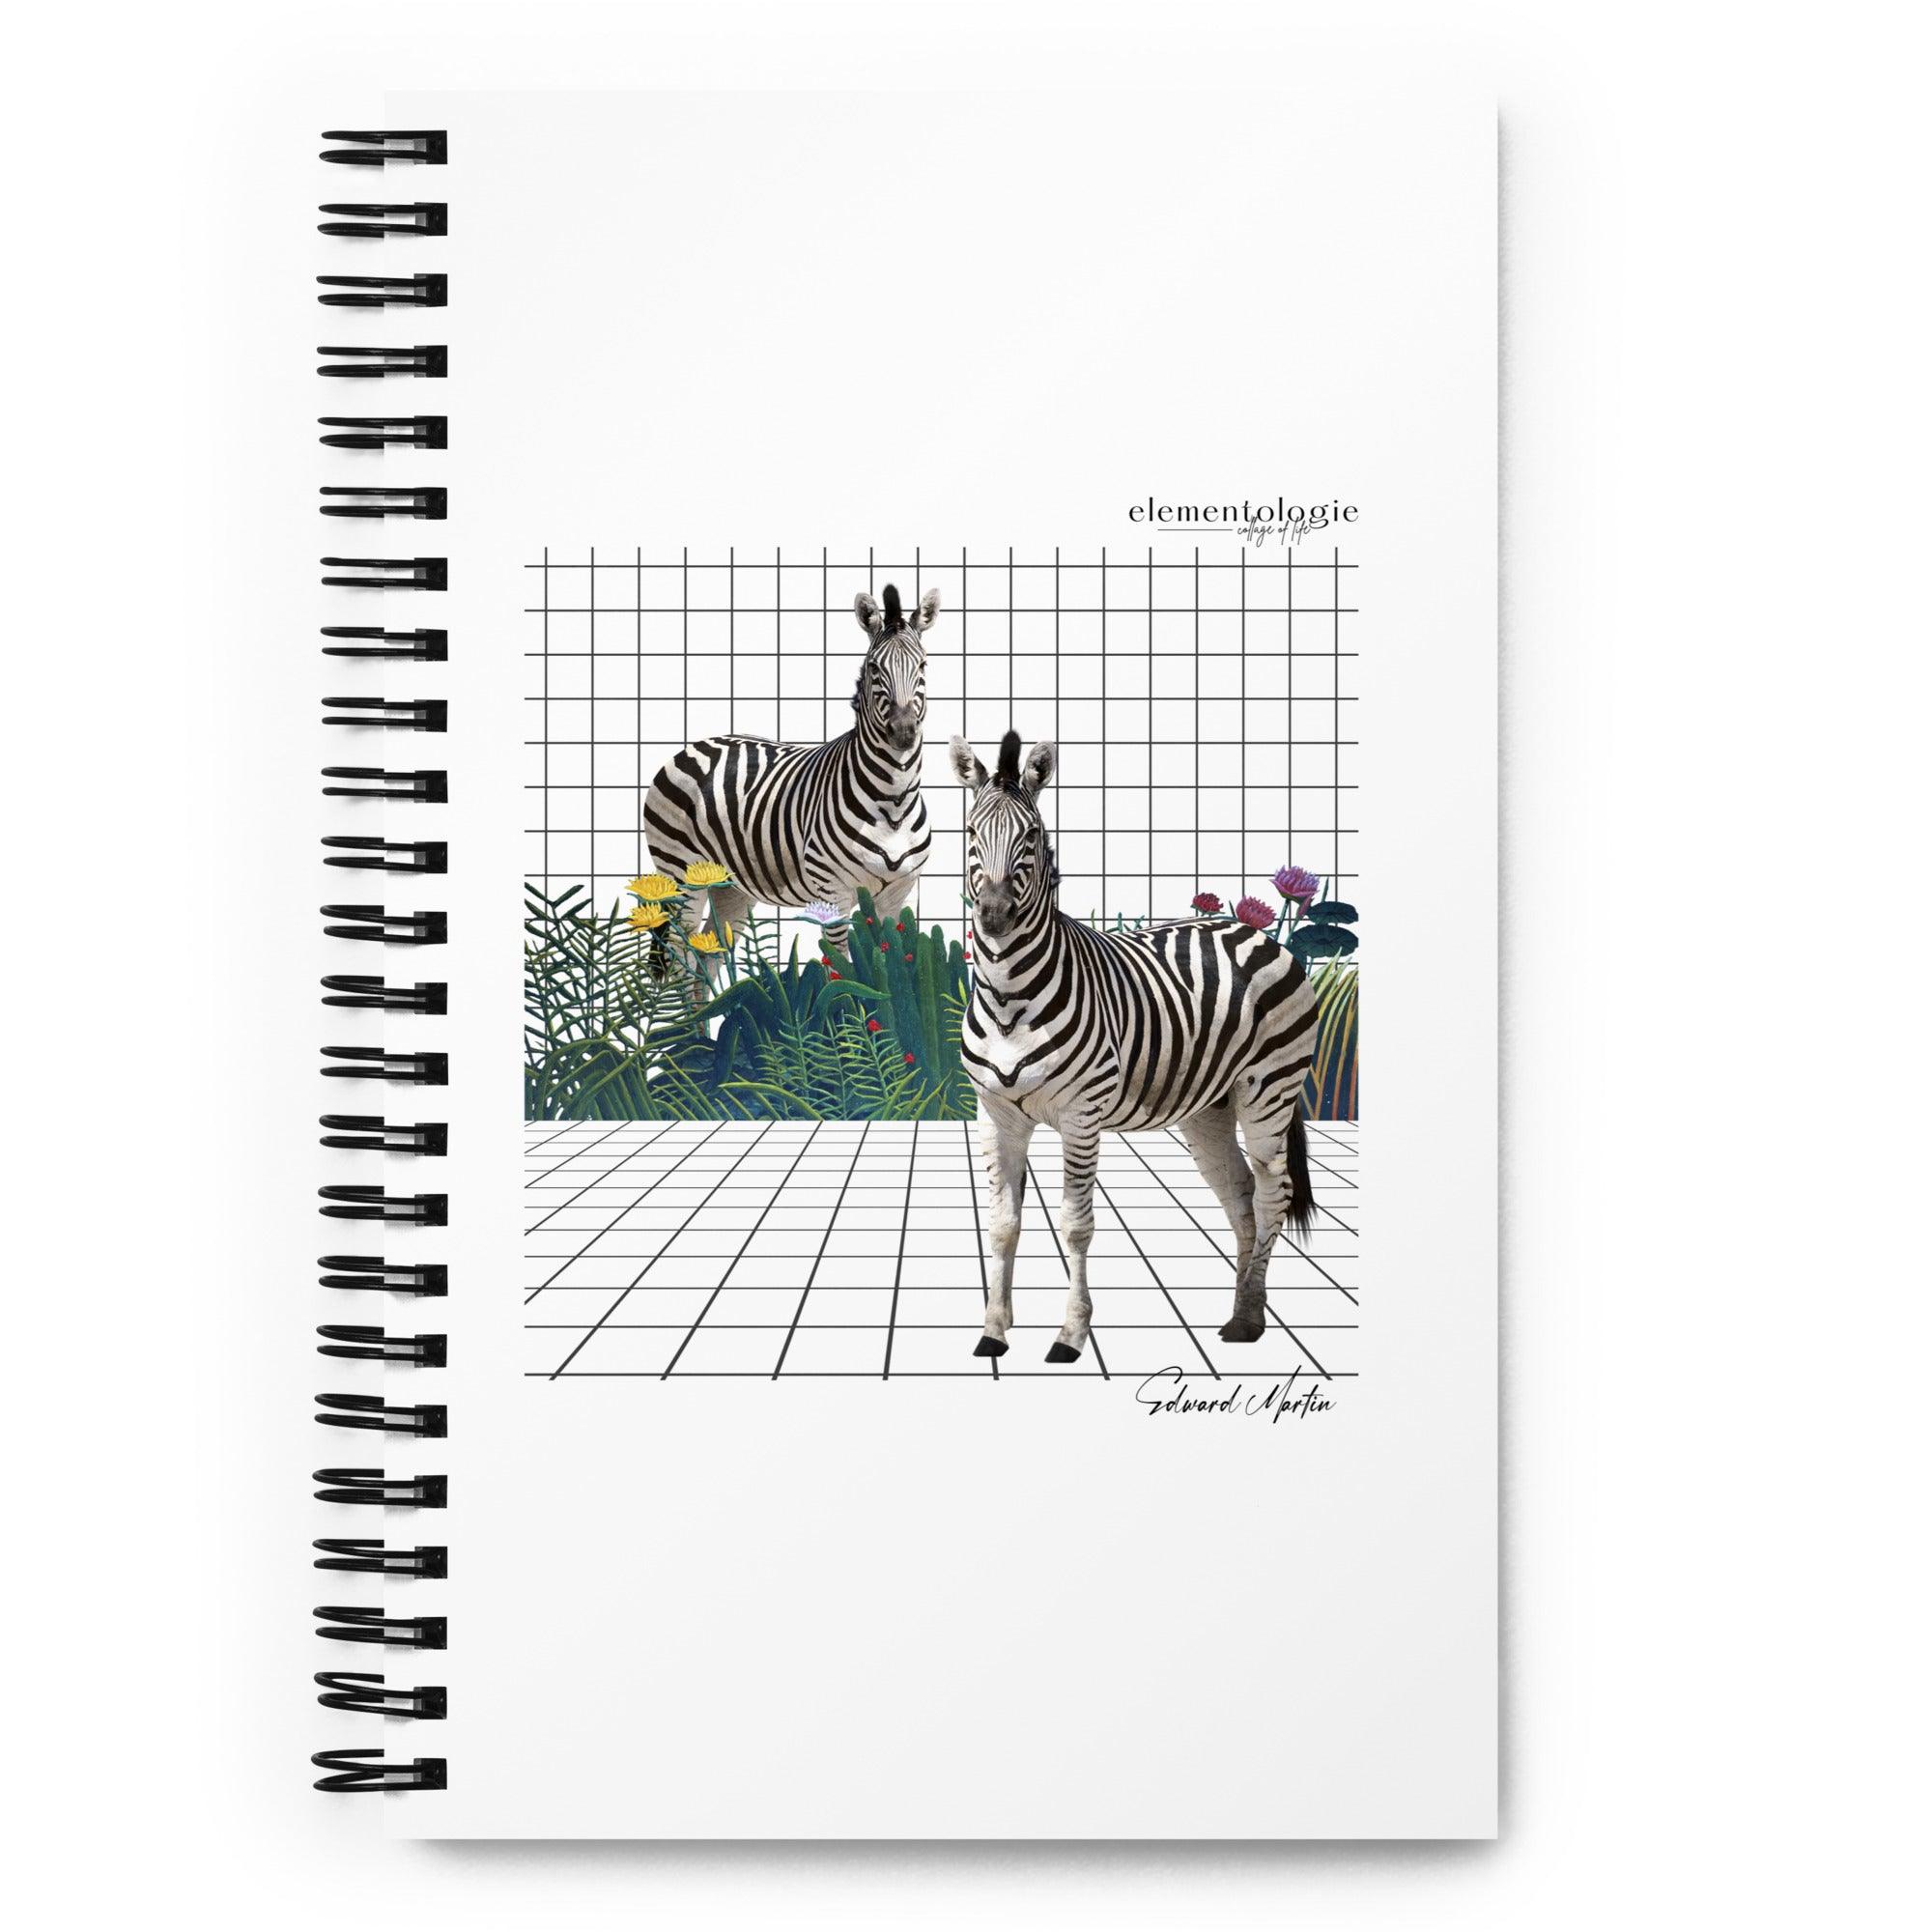 Spiral notebook-Zebras by Edward Martin - Elementologie